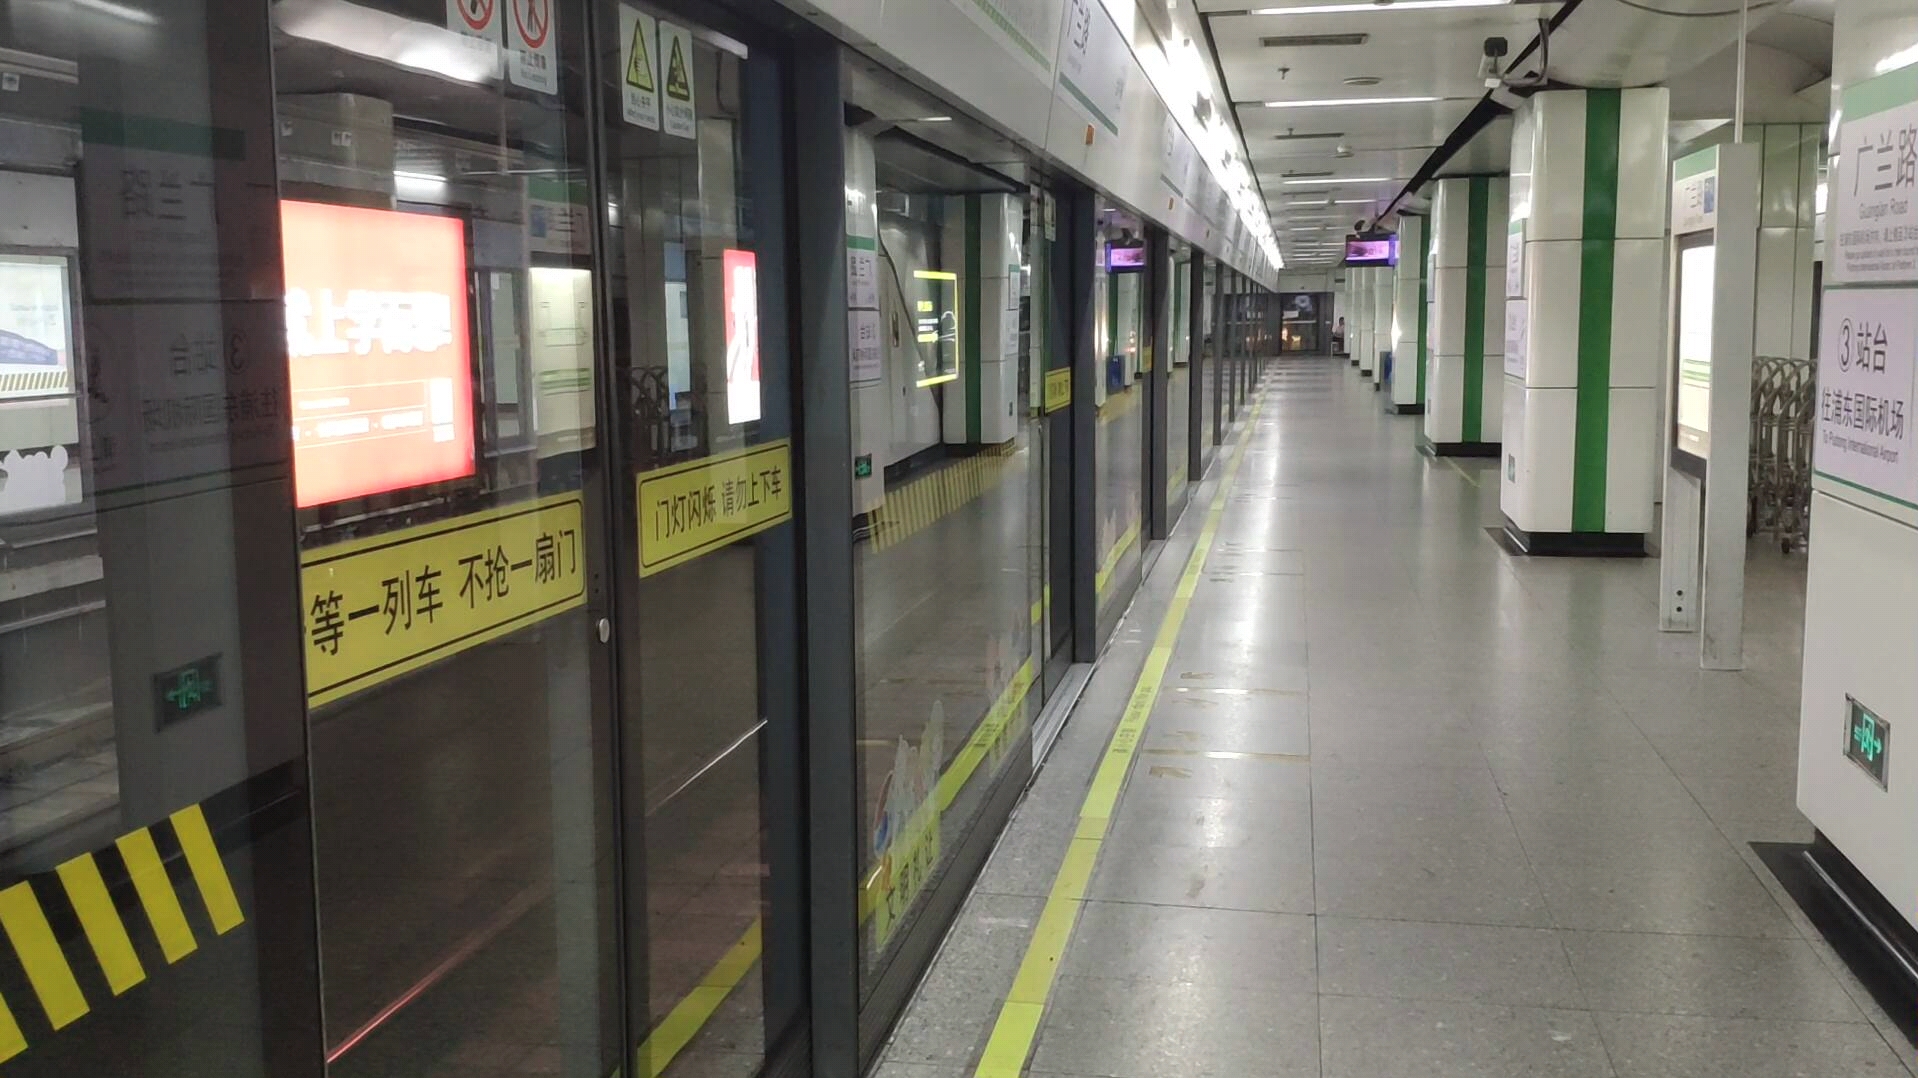 上海地铁2号线02a01型列车0211号车到达广兰路站2号站台终点站